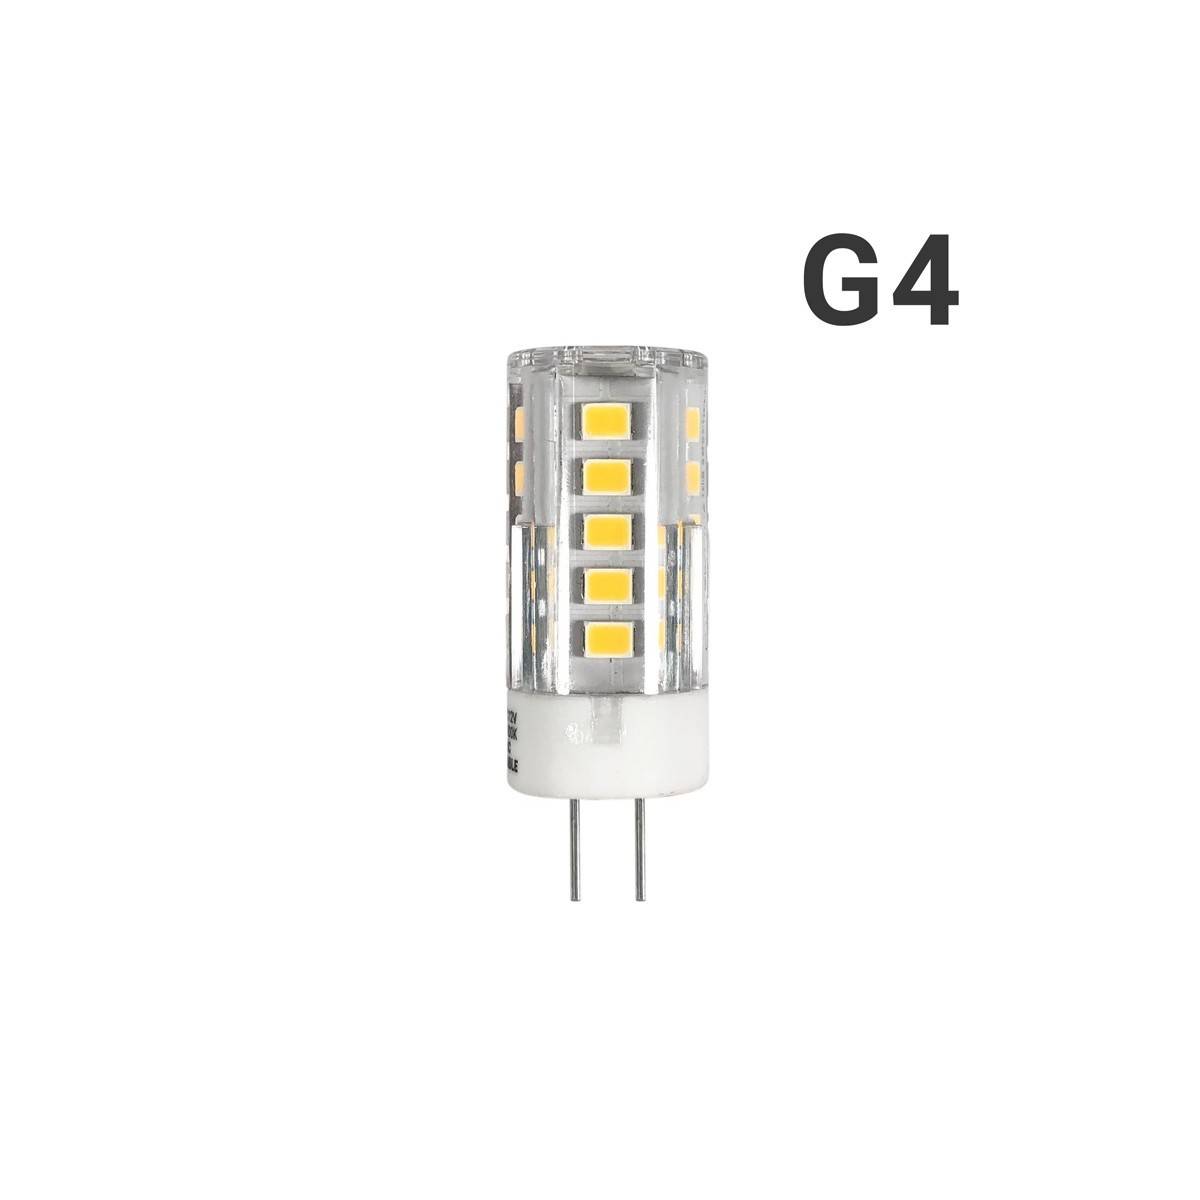 LED G4 2,5W 12V AC/DC Kalteweiß G4 G9 290 Lumen 270°